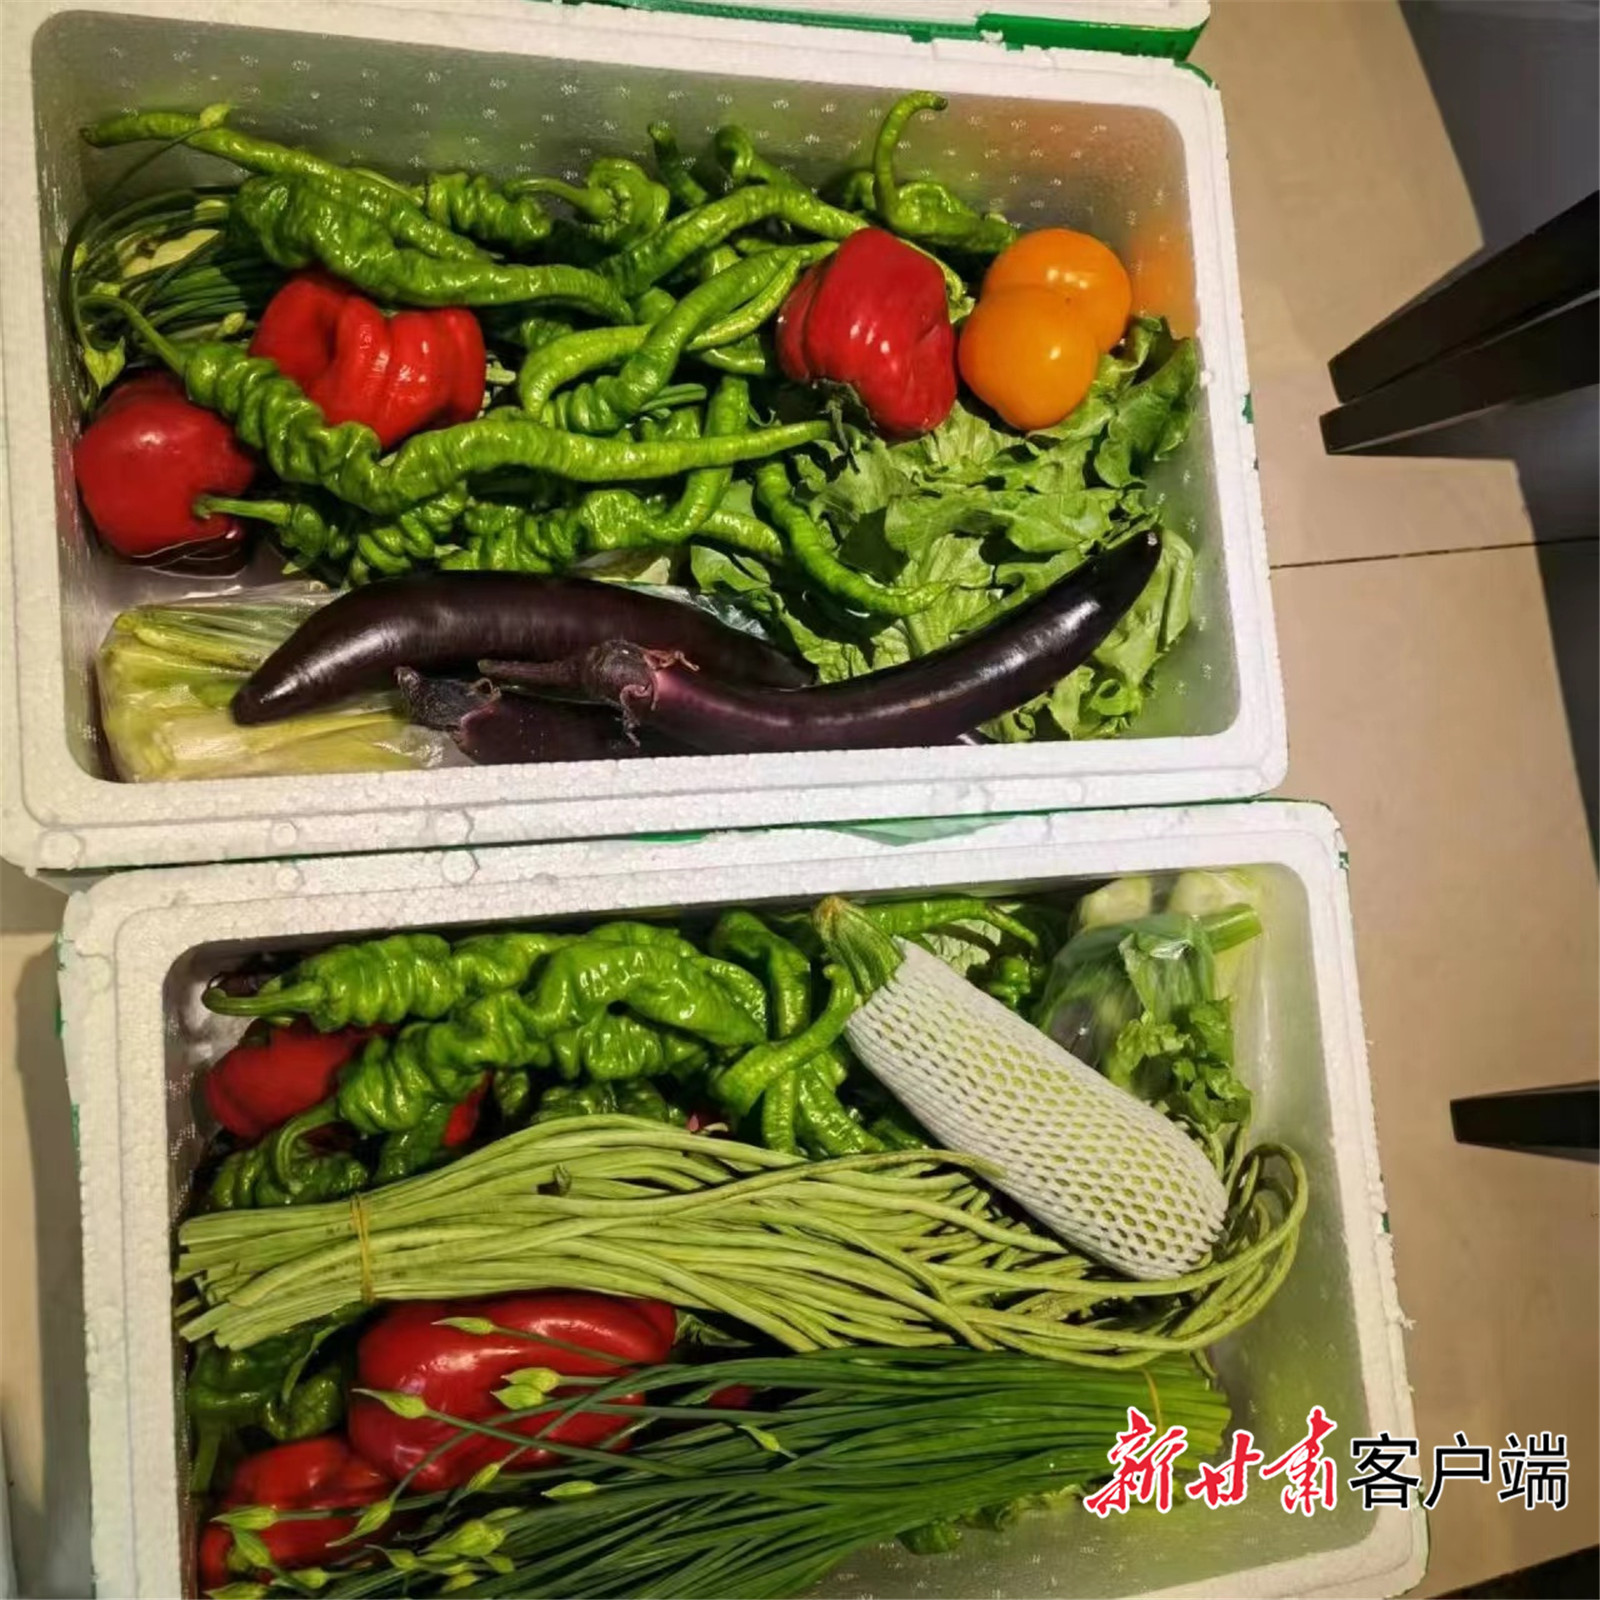 居民收到的蔬菜箱菜品新鲜